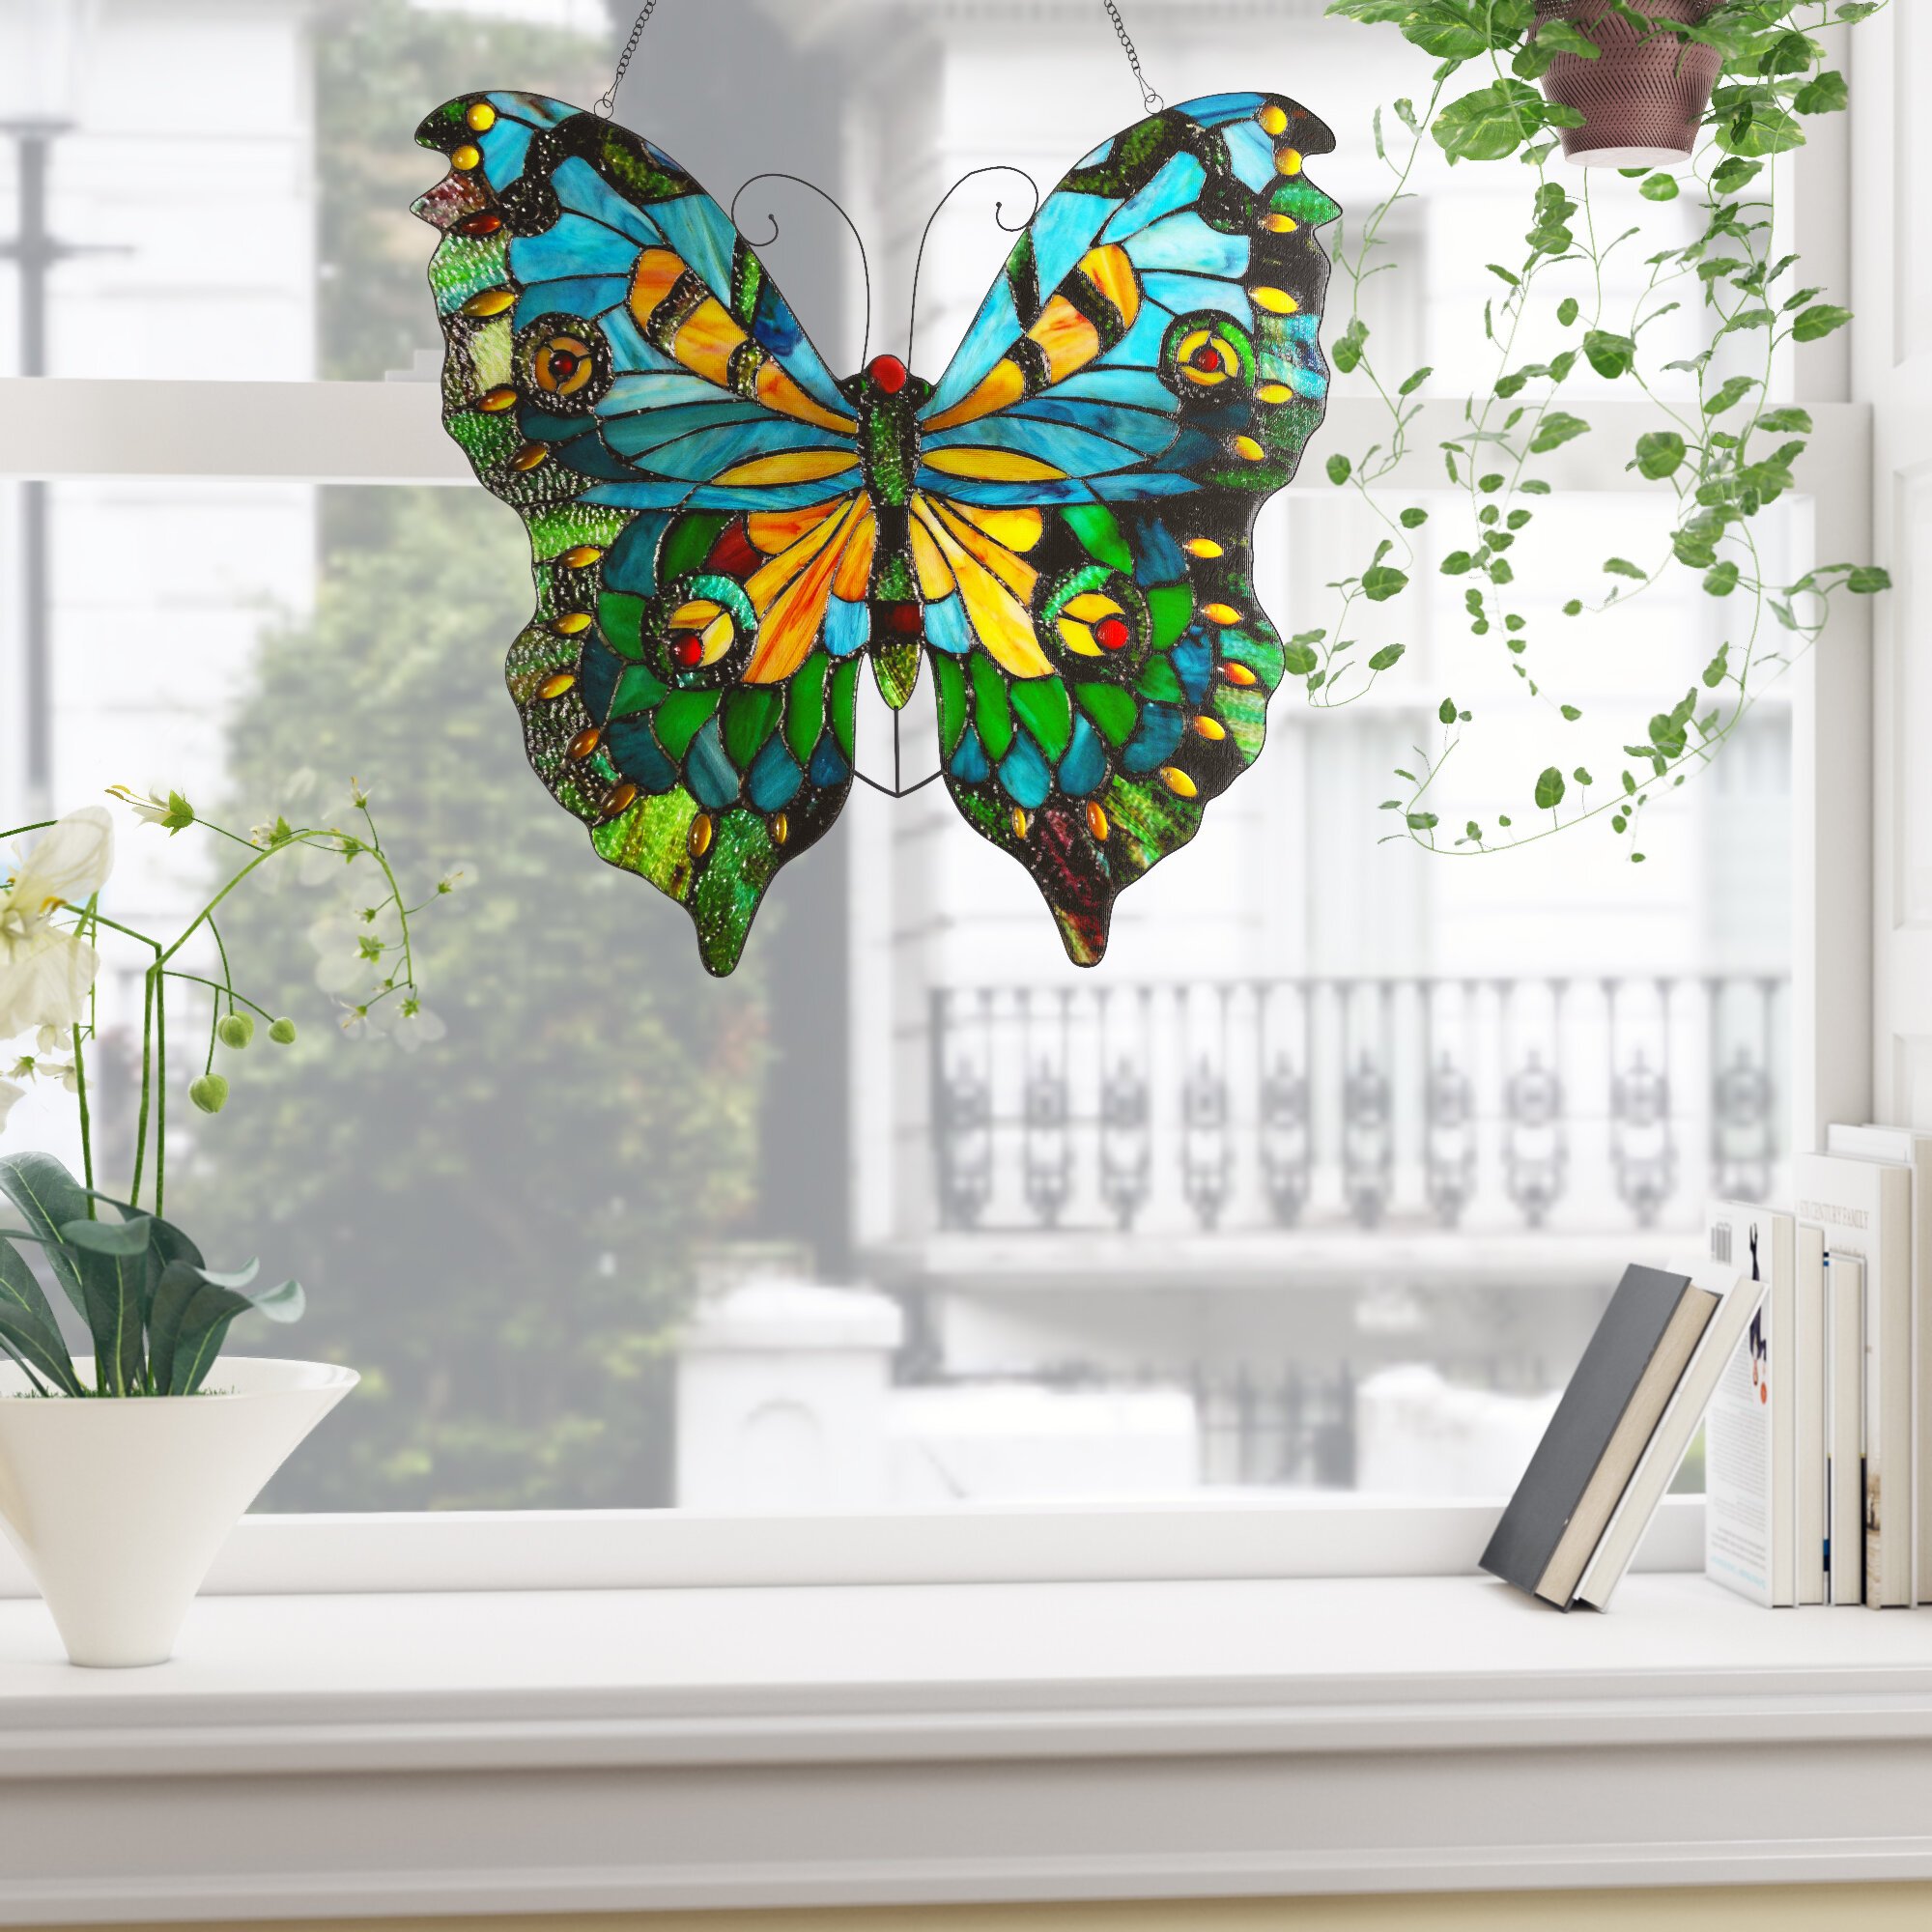 Бабочки влетают в дом. Бабочки на окна. Украшение окон бабочками. Бабочки на окнах декор. Бабочка на оконном стекле.